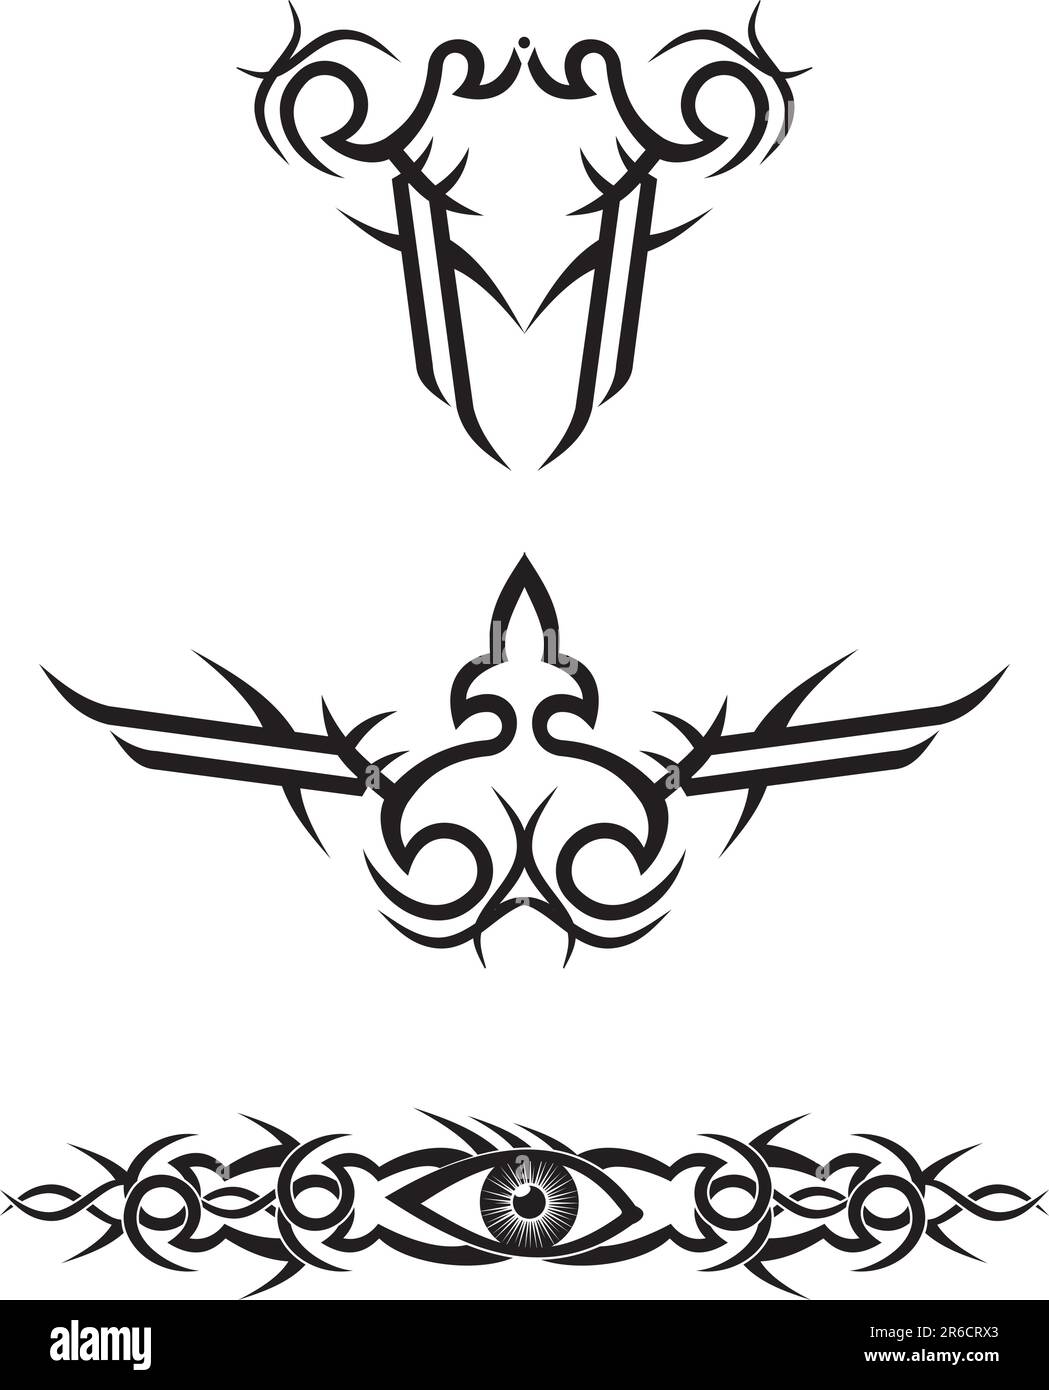 disegni di tatuaggi tribali / illustrazione vettoriale Illustrazione Vettoriale